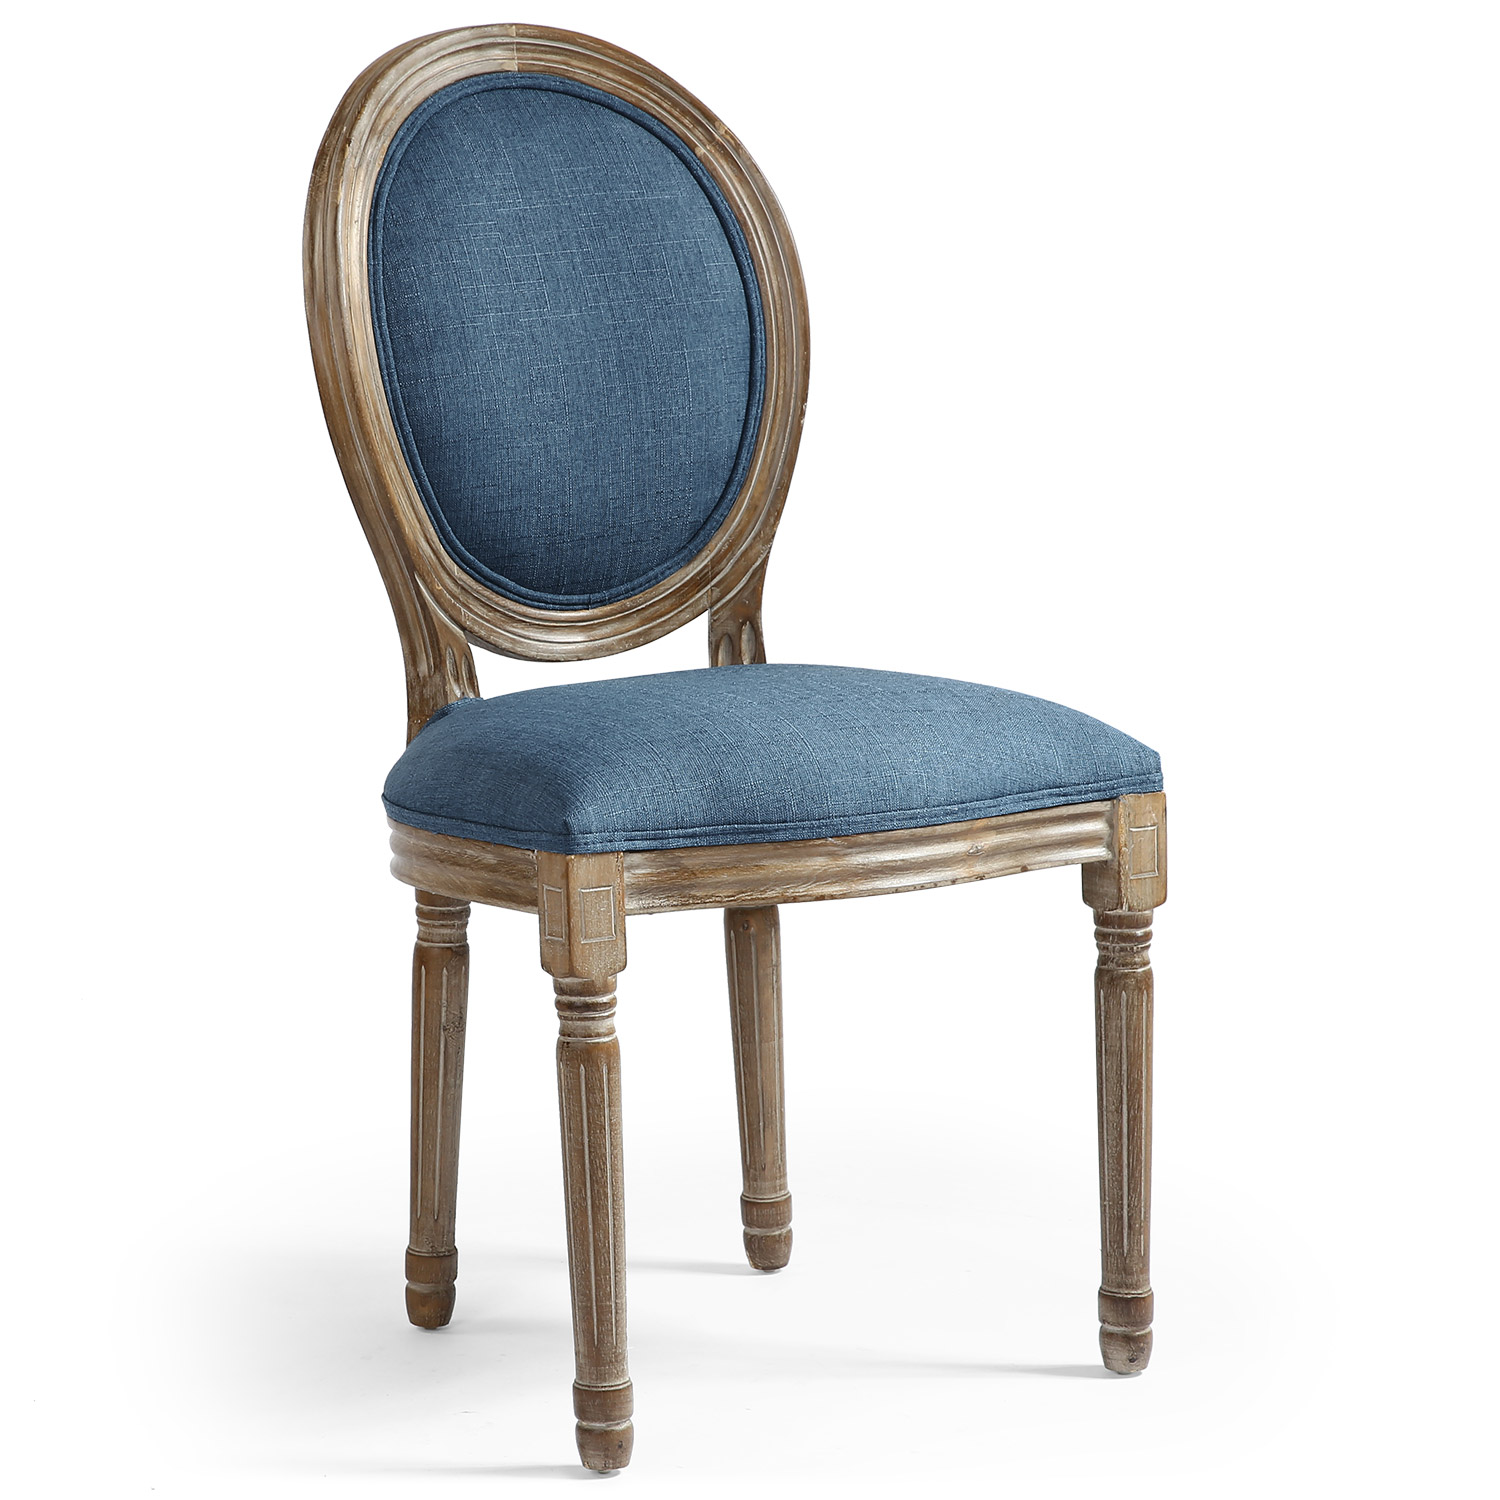 Lot van 20 Louis XVI-stoelen in medaillonstijl in blauwe stof